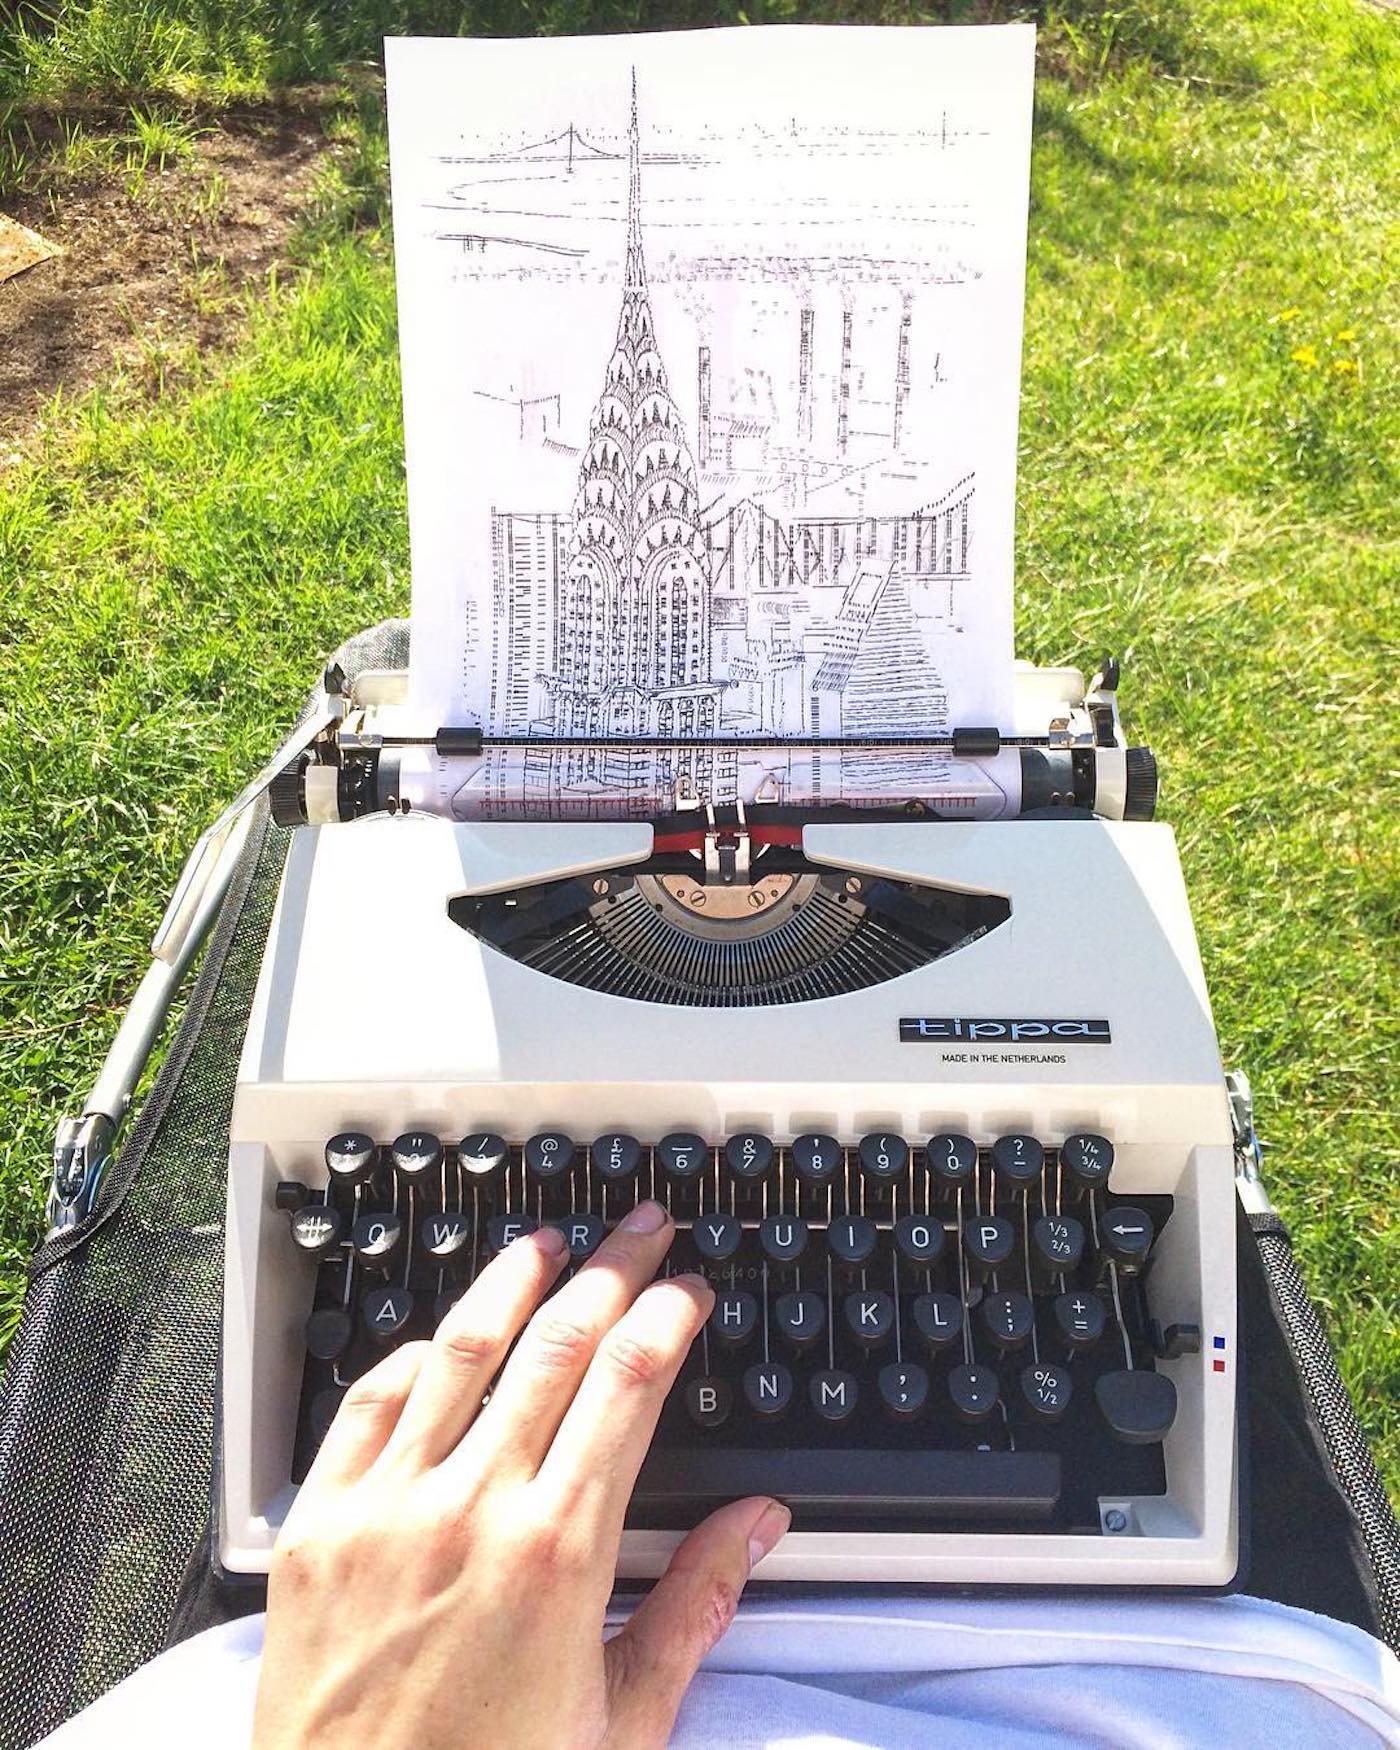 L'artiste James Cook dessine en tapant sur sa machine à écrire